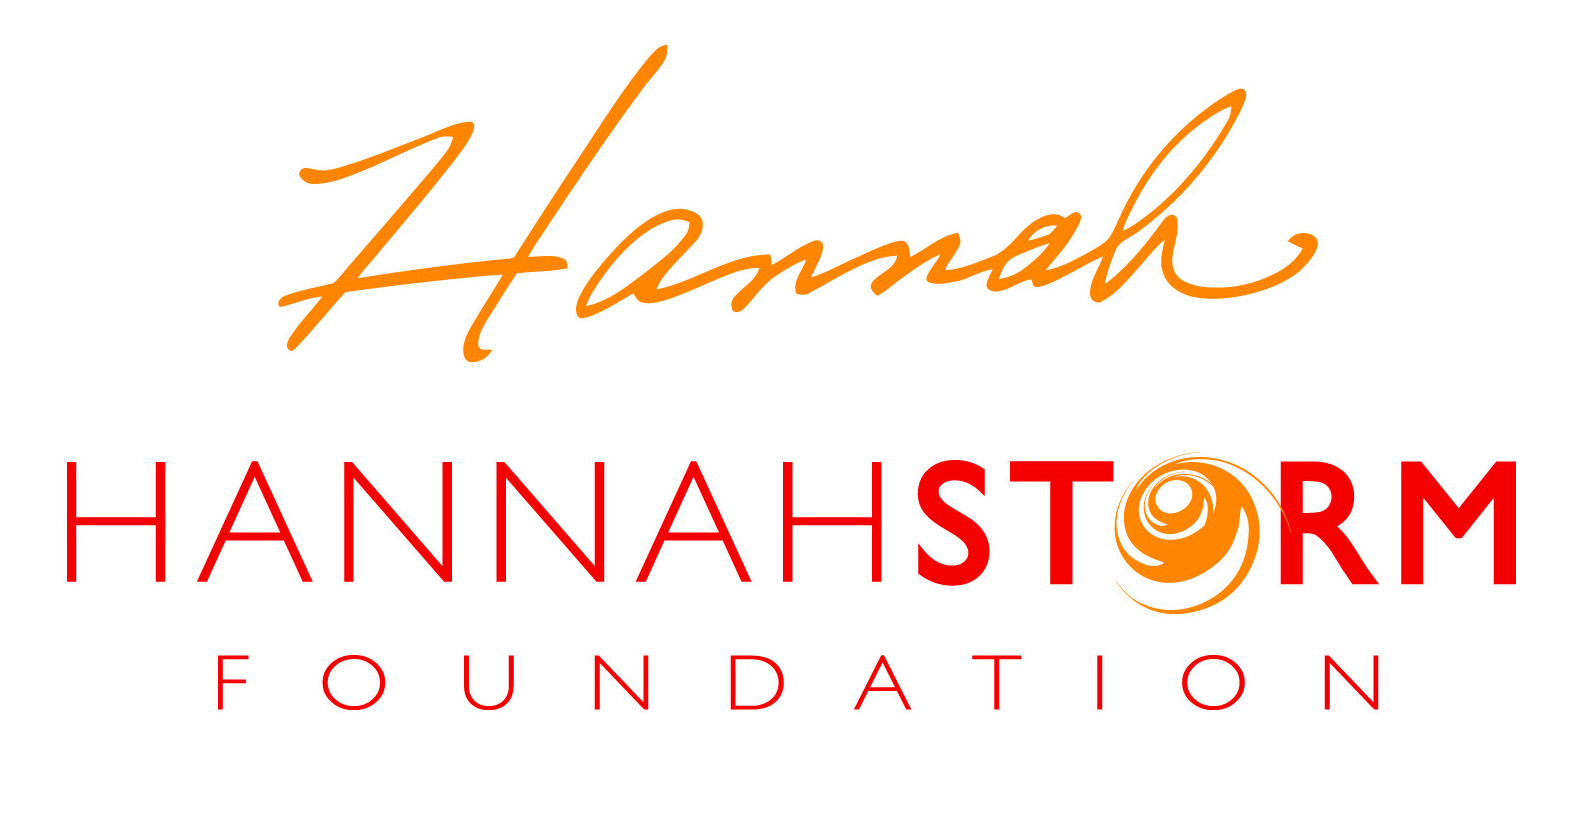 Hannah Storm Foundation